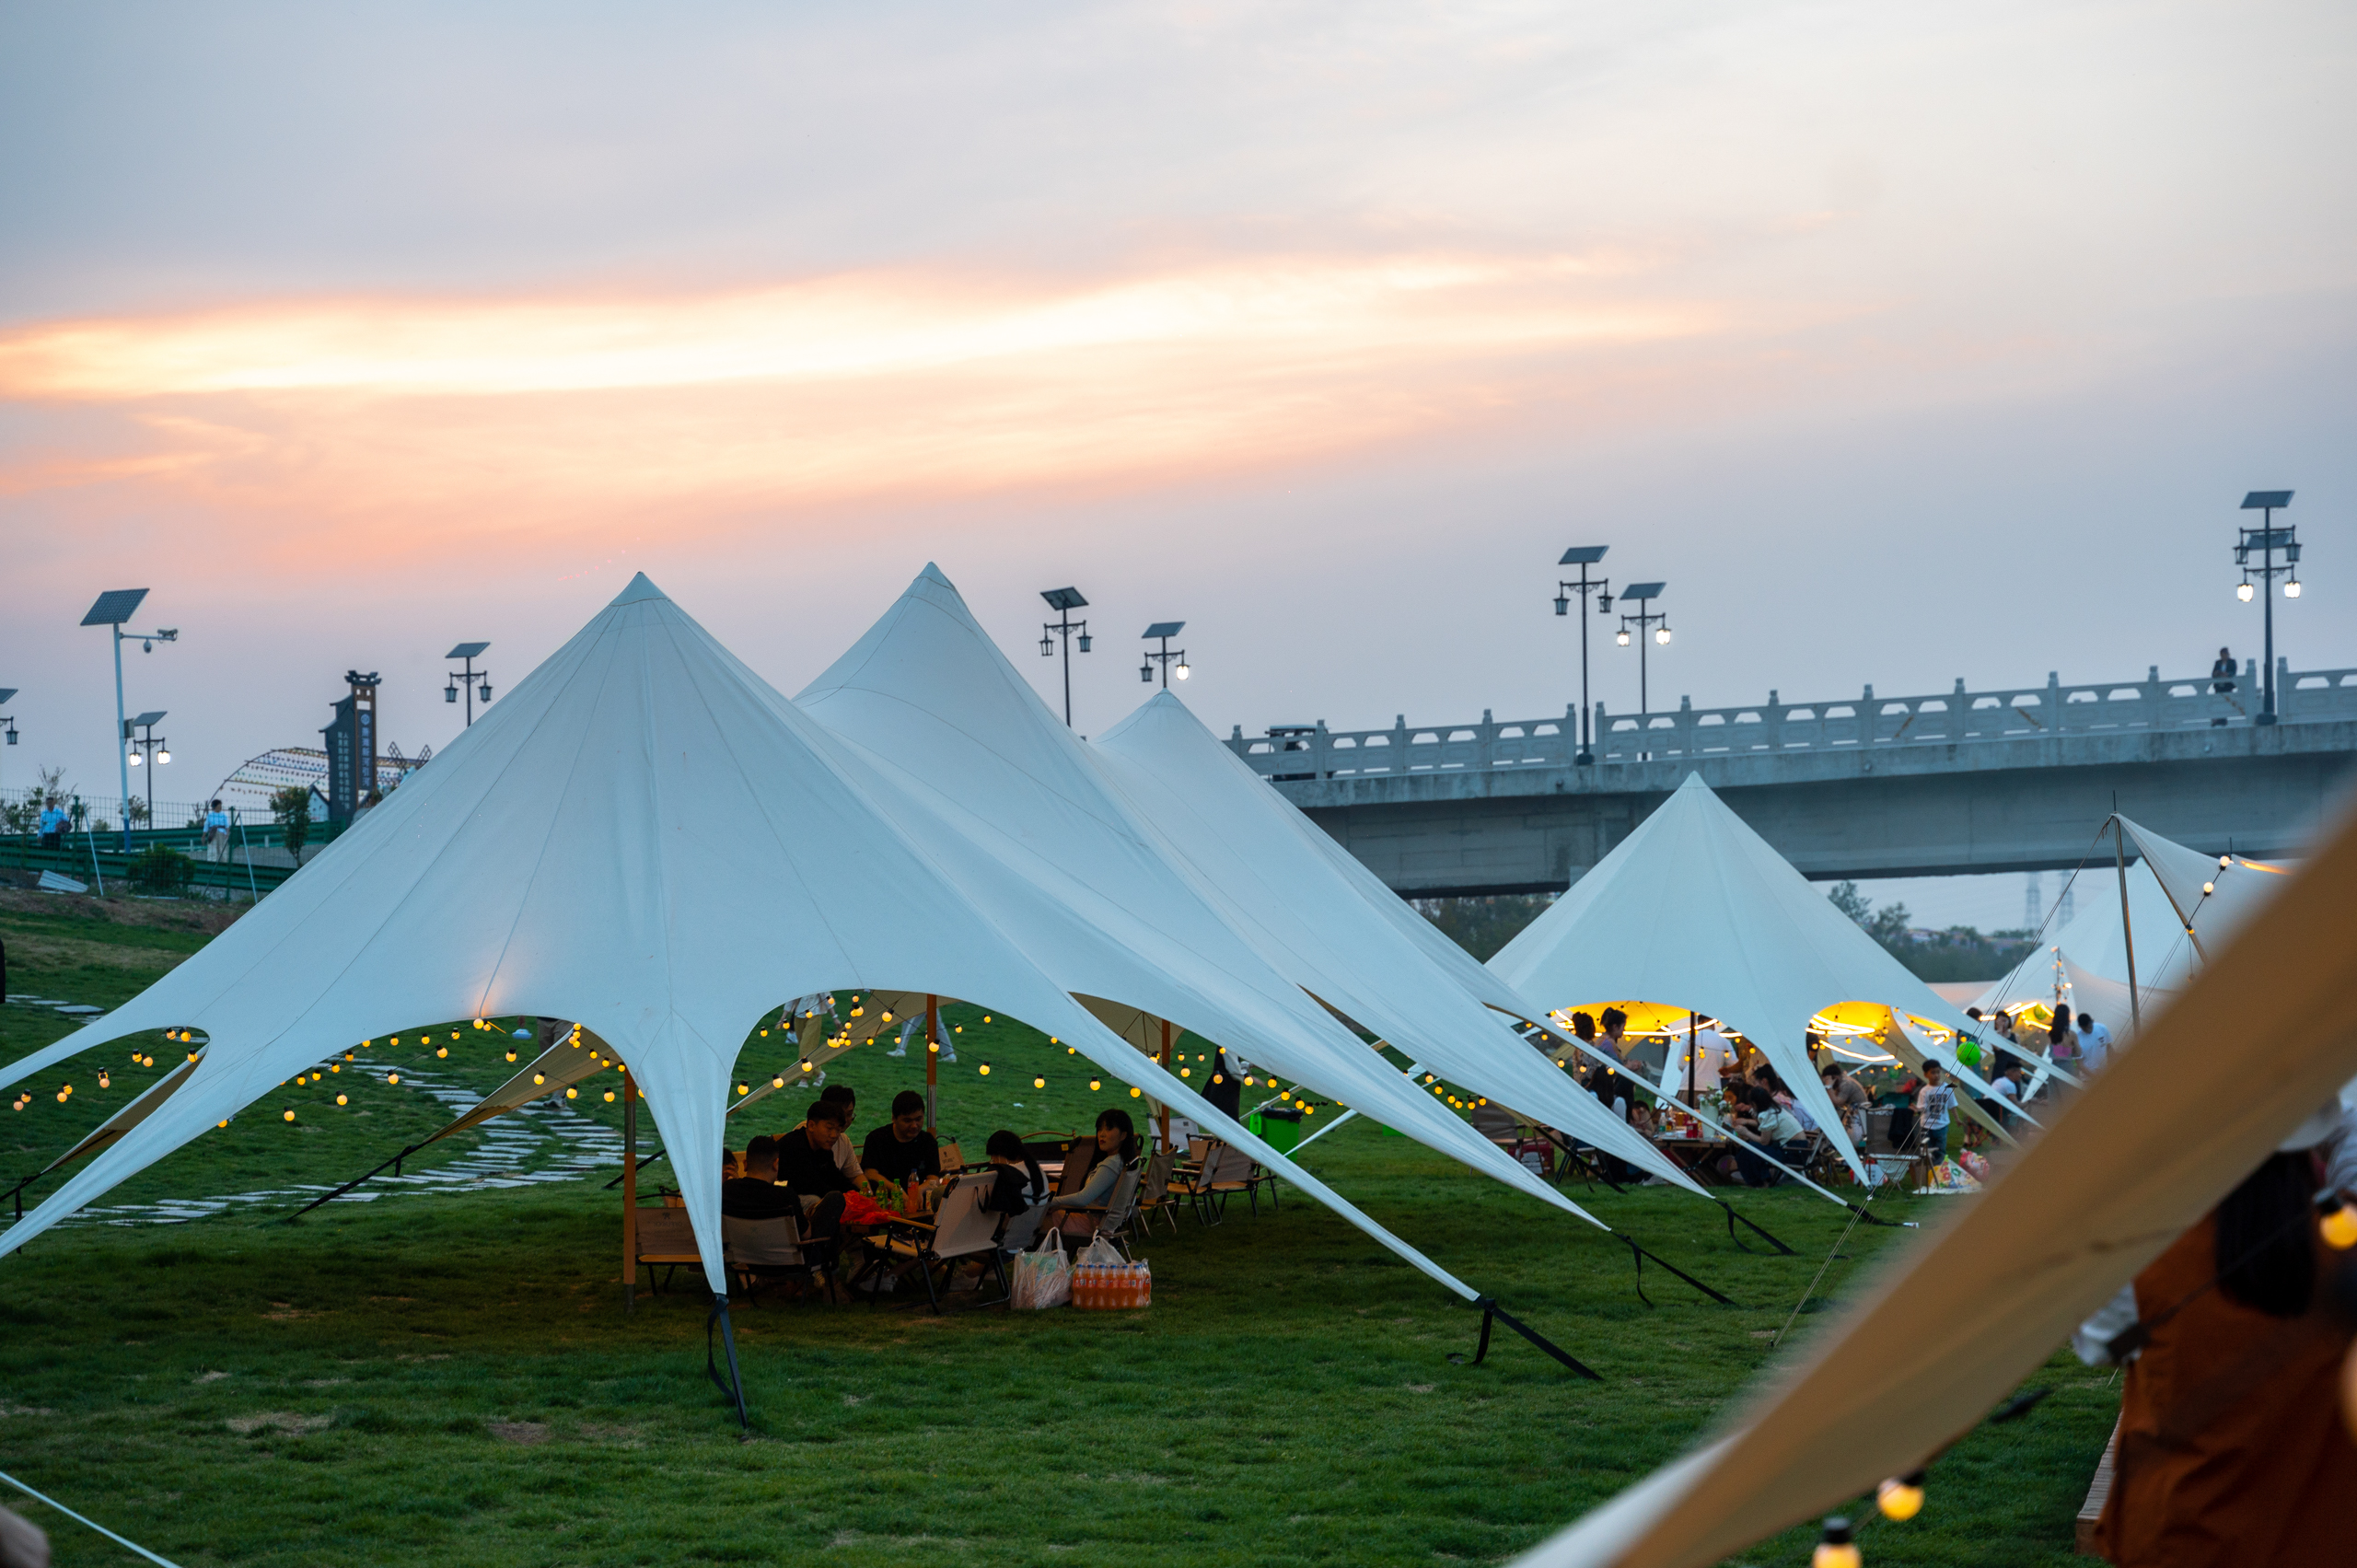 安徽宿州发现一家超美帐篷营地,营地临水依山,刚开业就成网红点